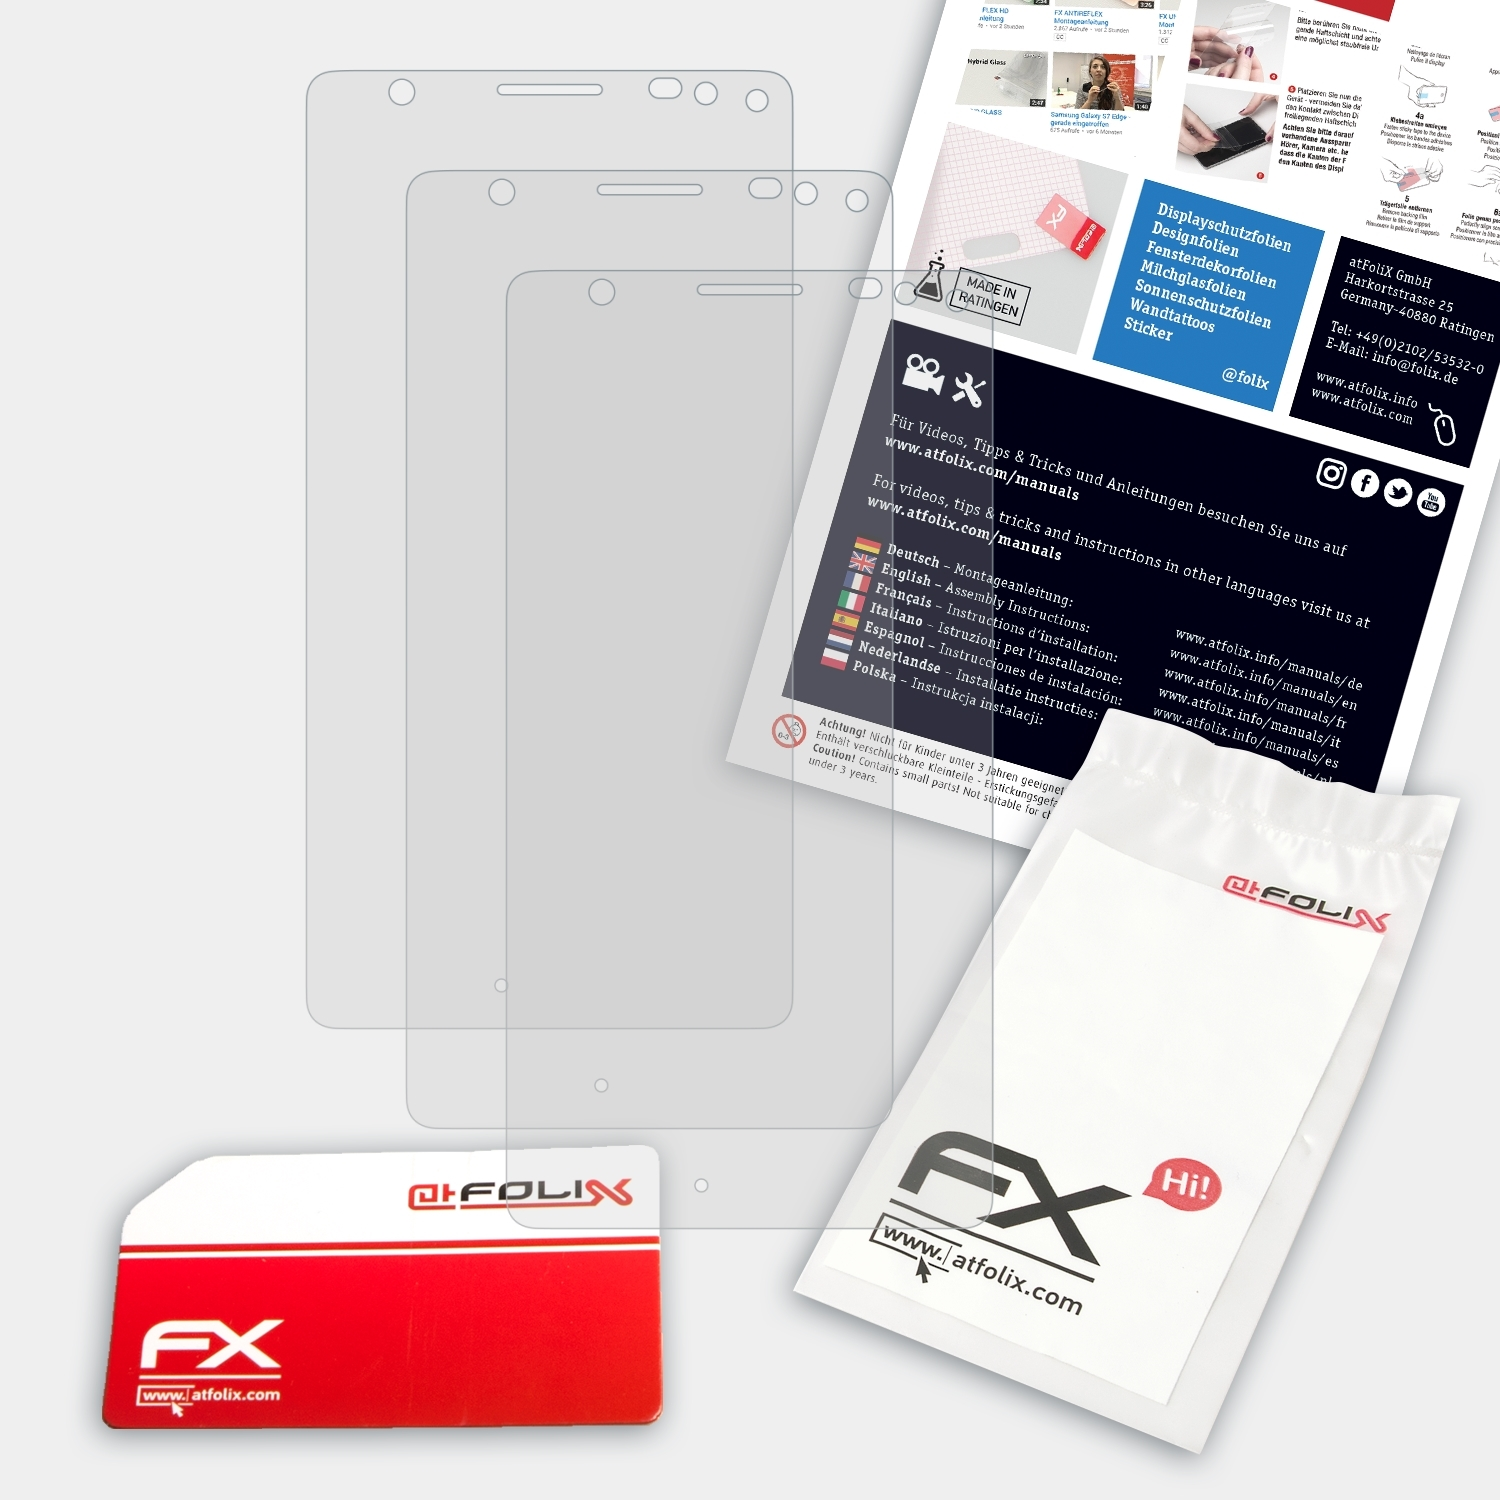 Lumia Displayschutz(für FX-Antireflex XL) 950 ATFOLIX 3x Microsoft